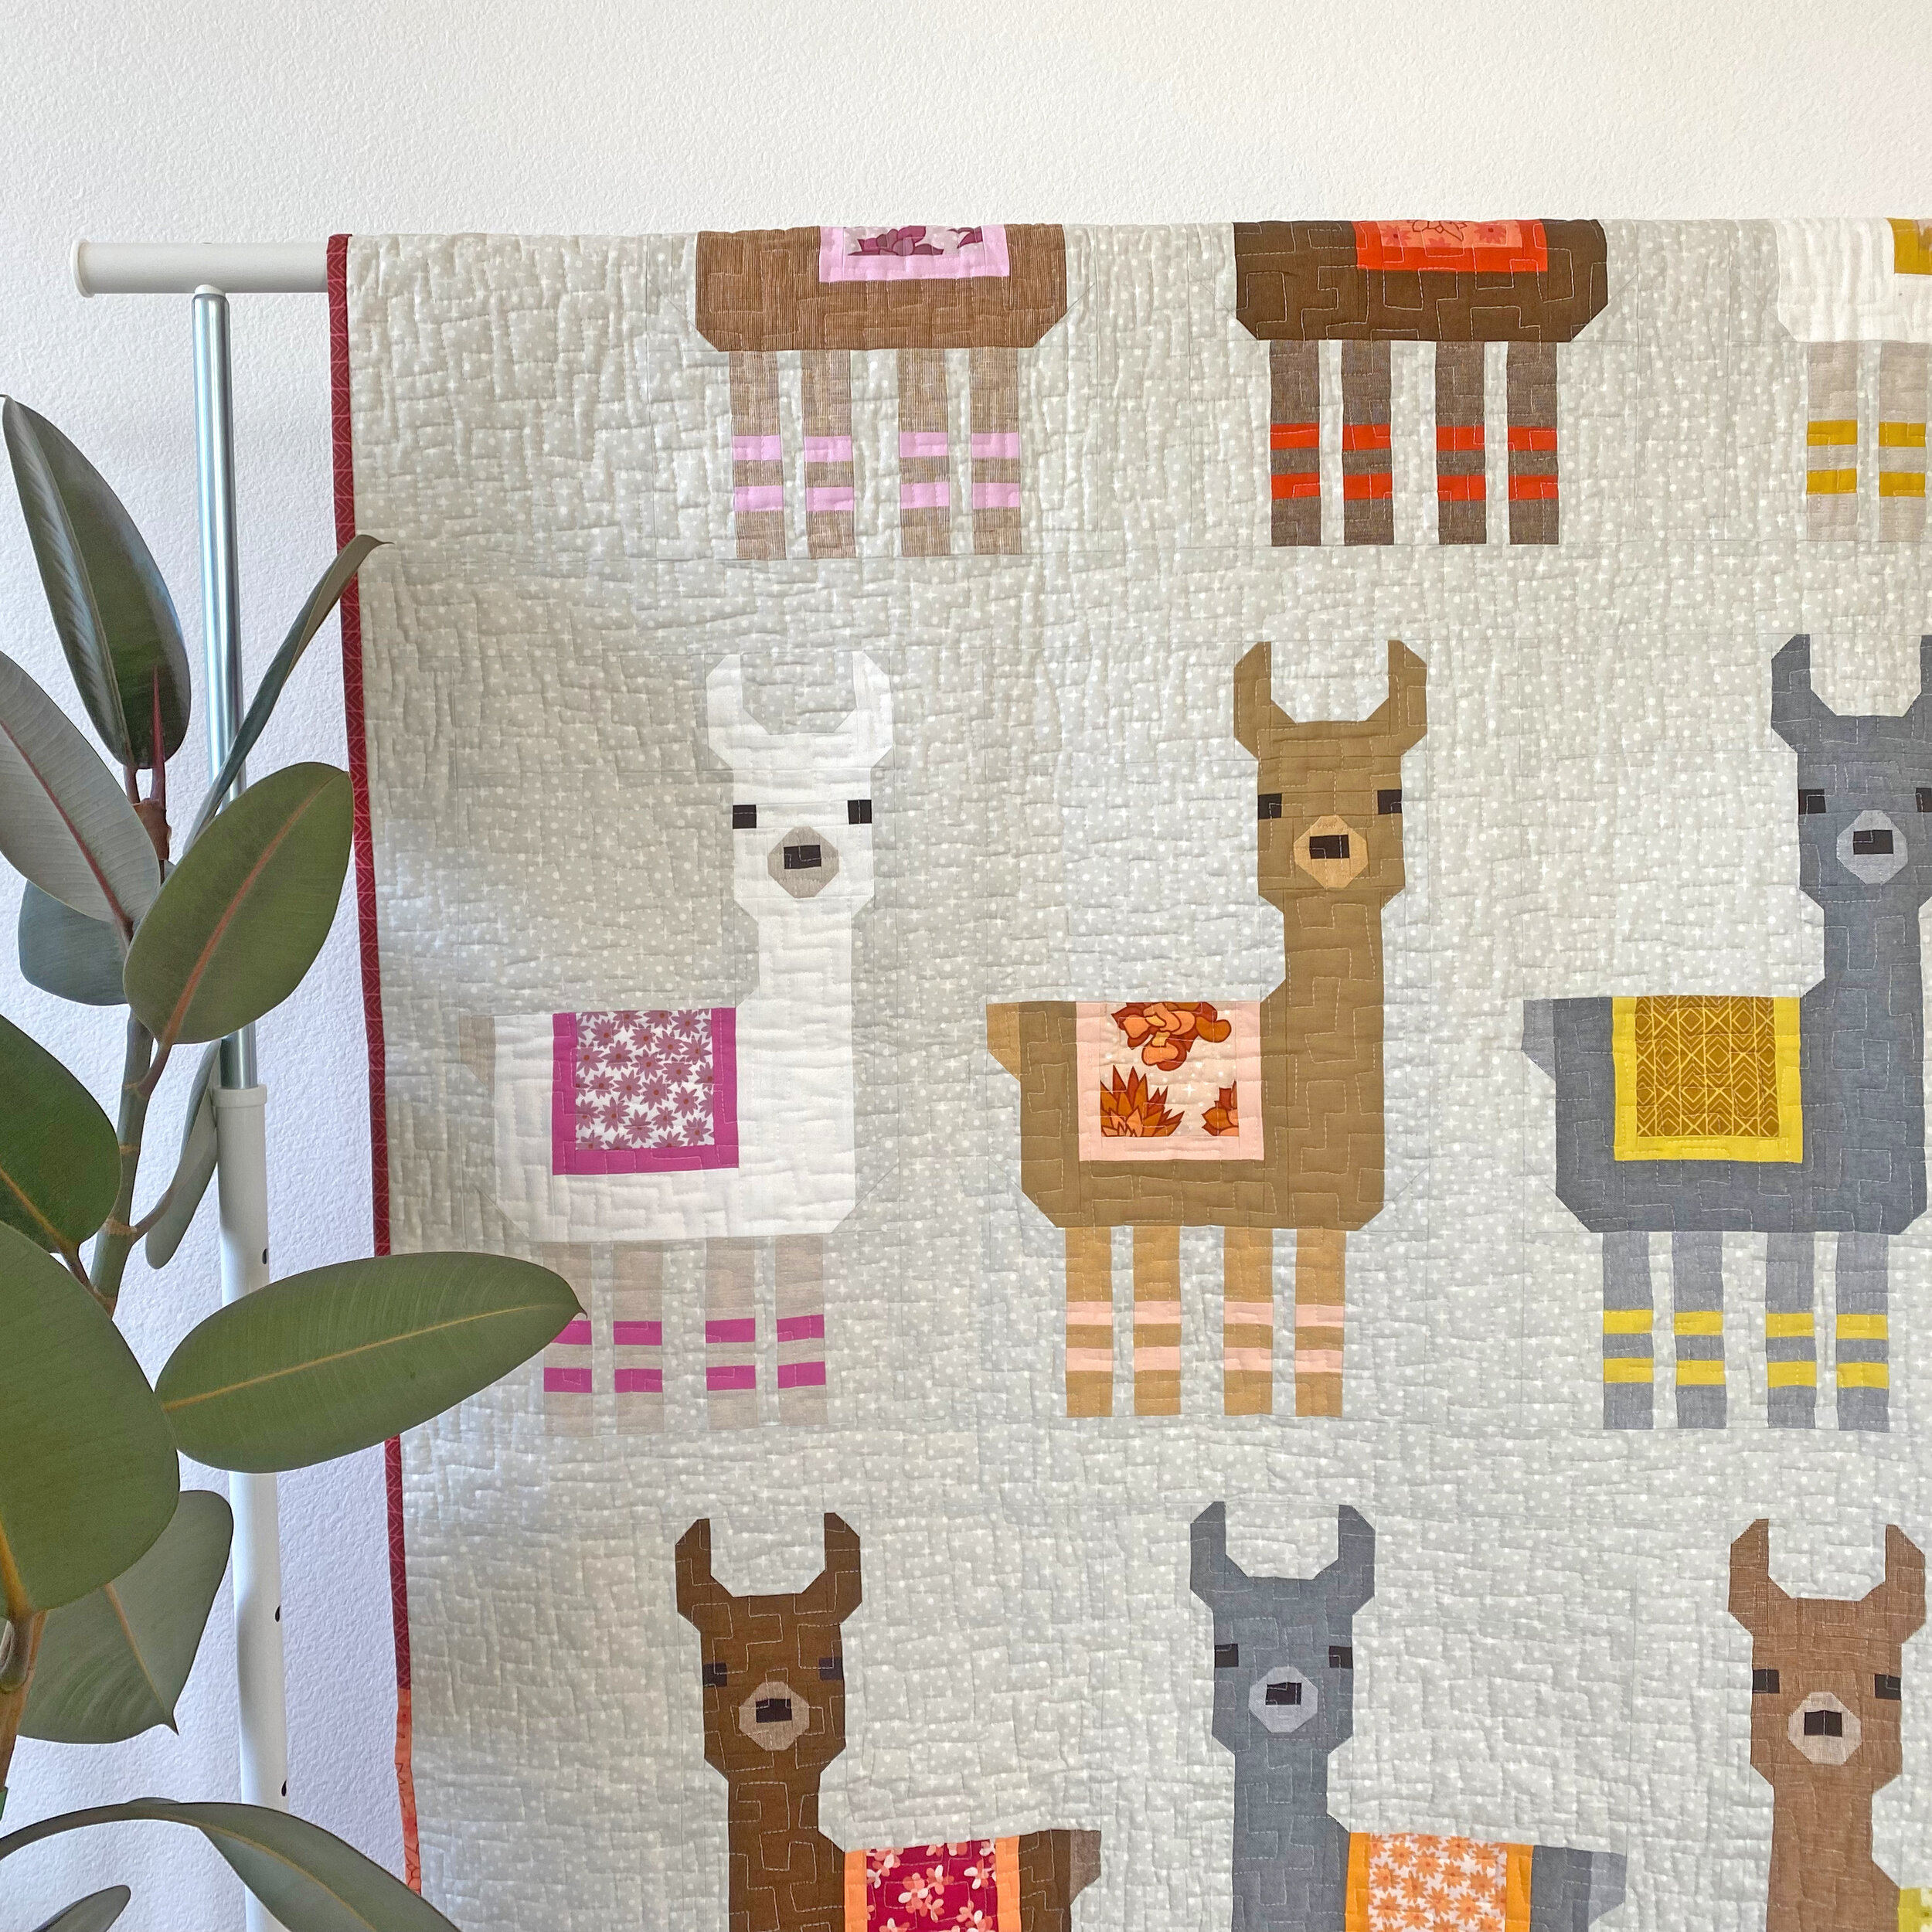 Little Llamas — Patterns by Elizabeth Hartman